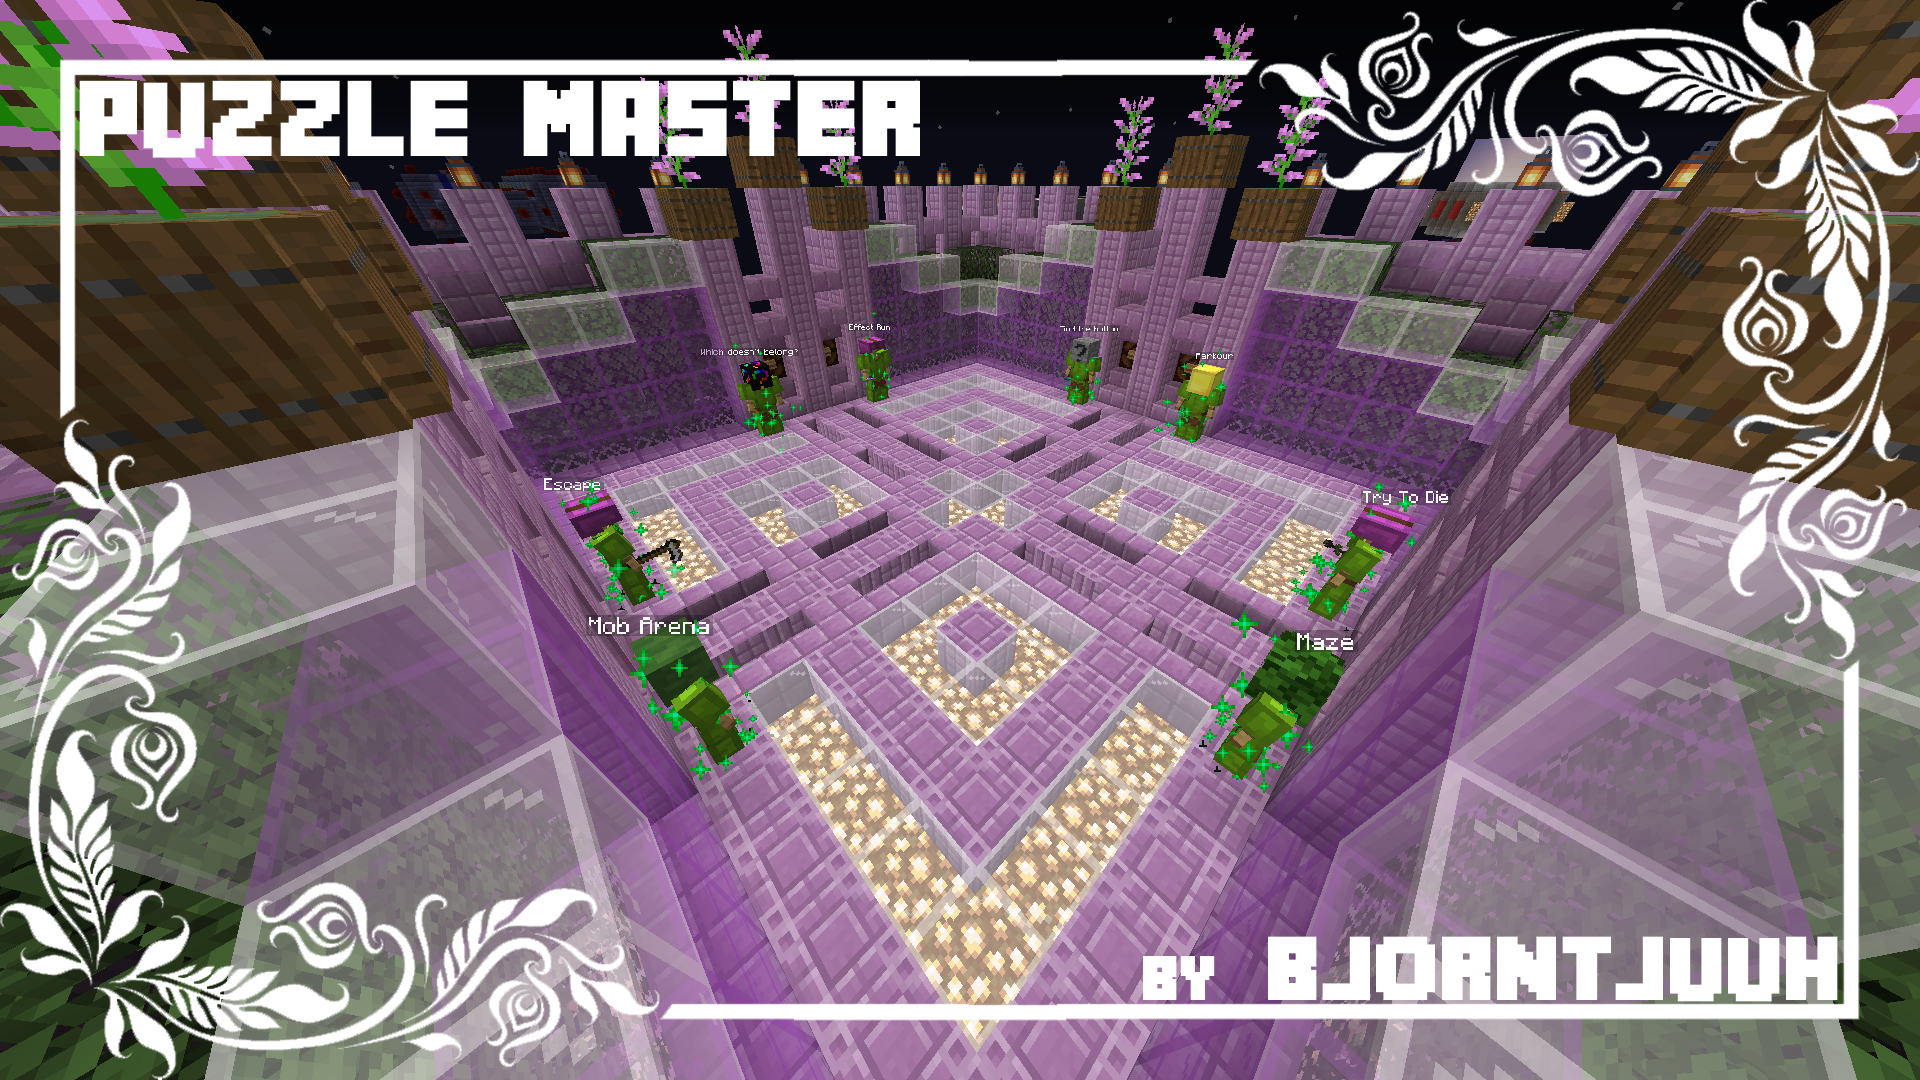 İndir Puzzle Master için Minecraft 1.14.4